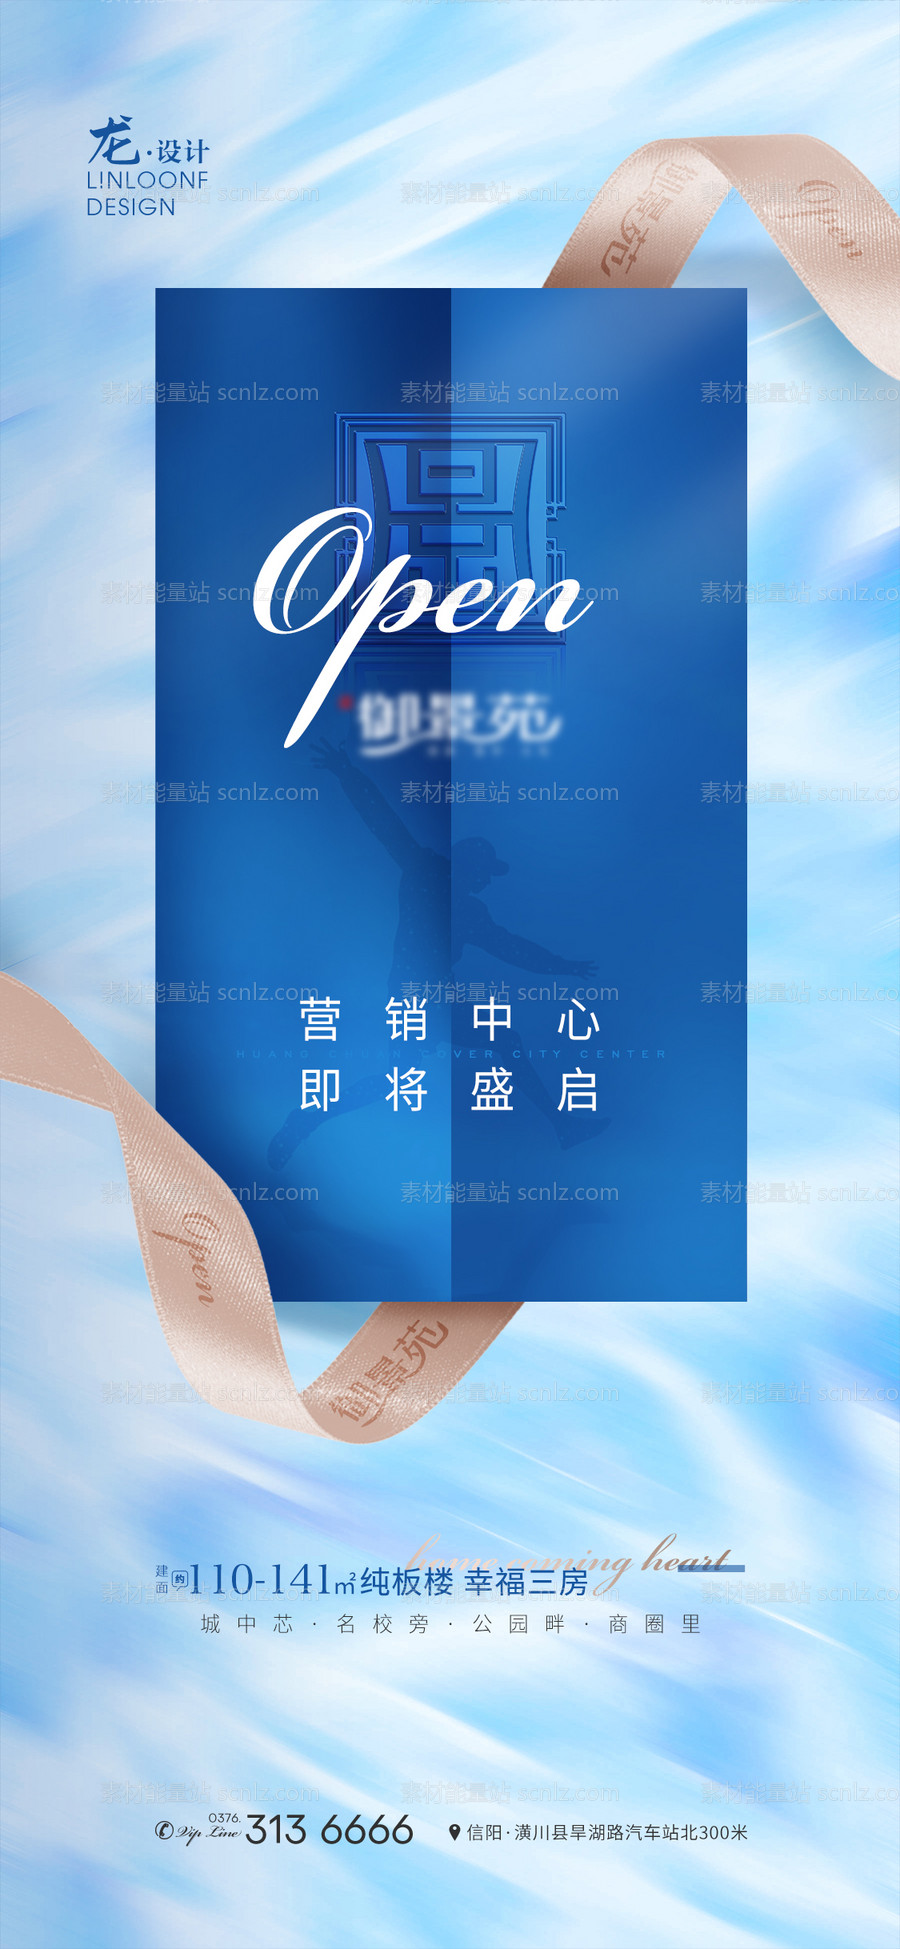 素材能量站-营销中心开放海报